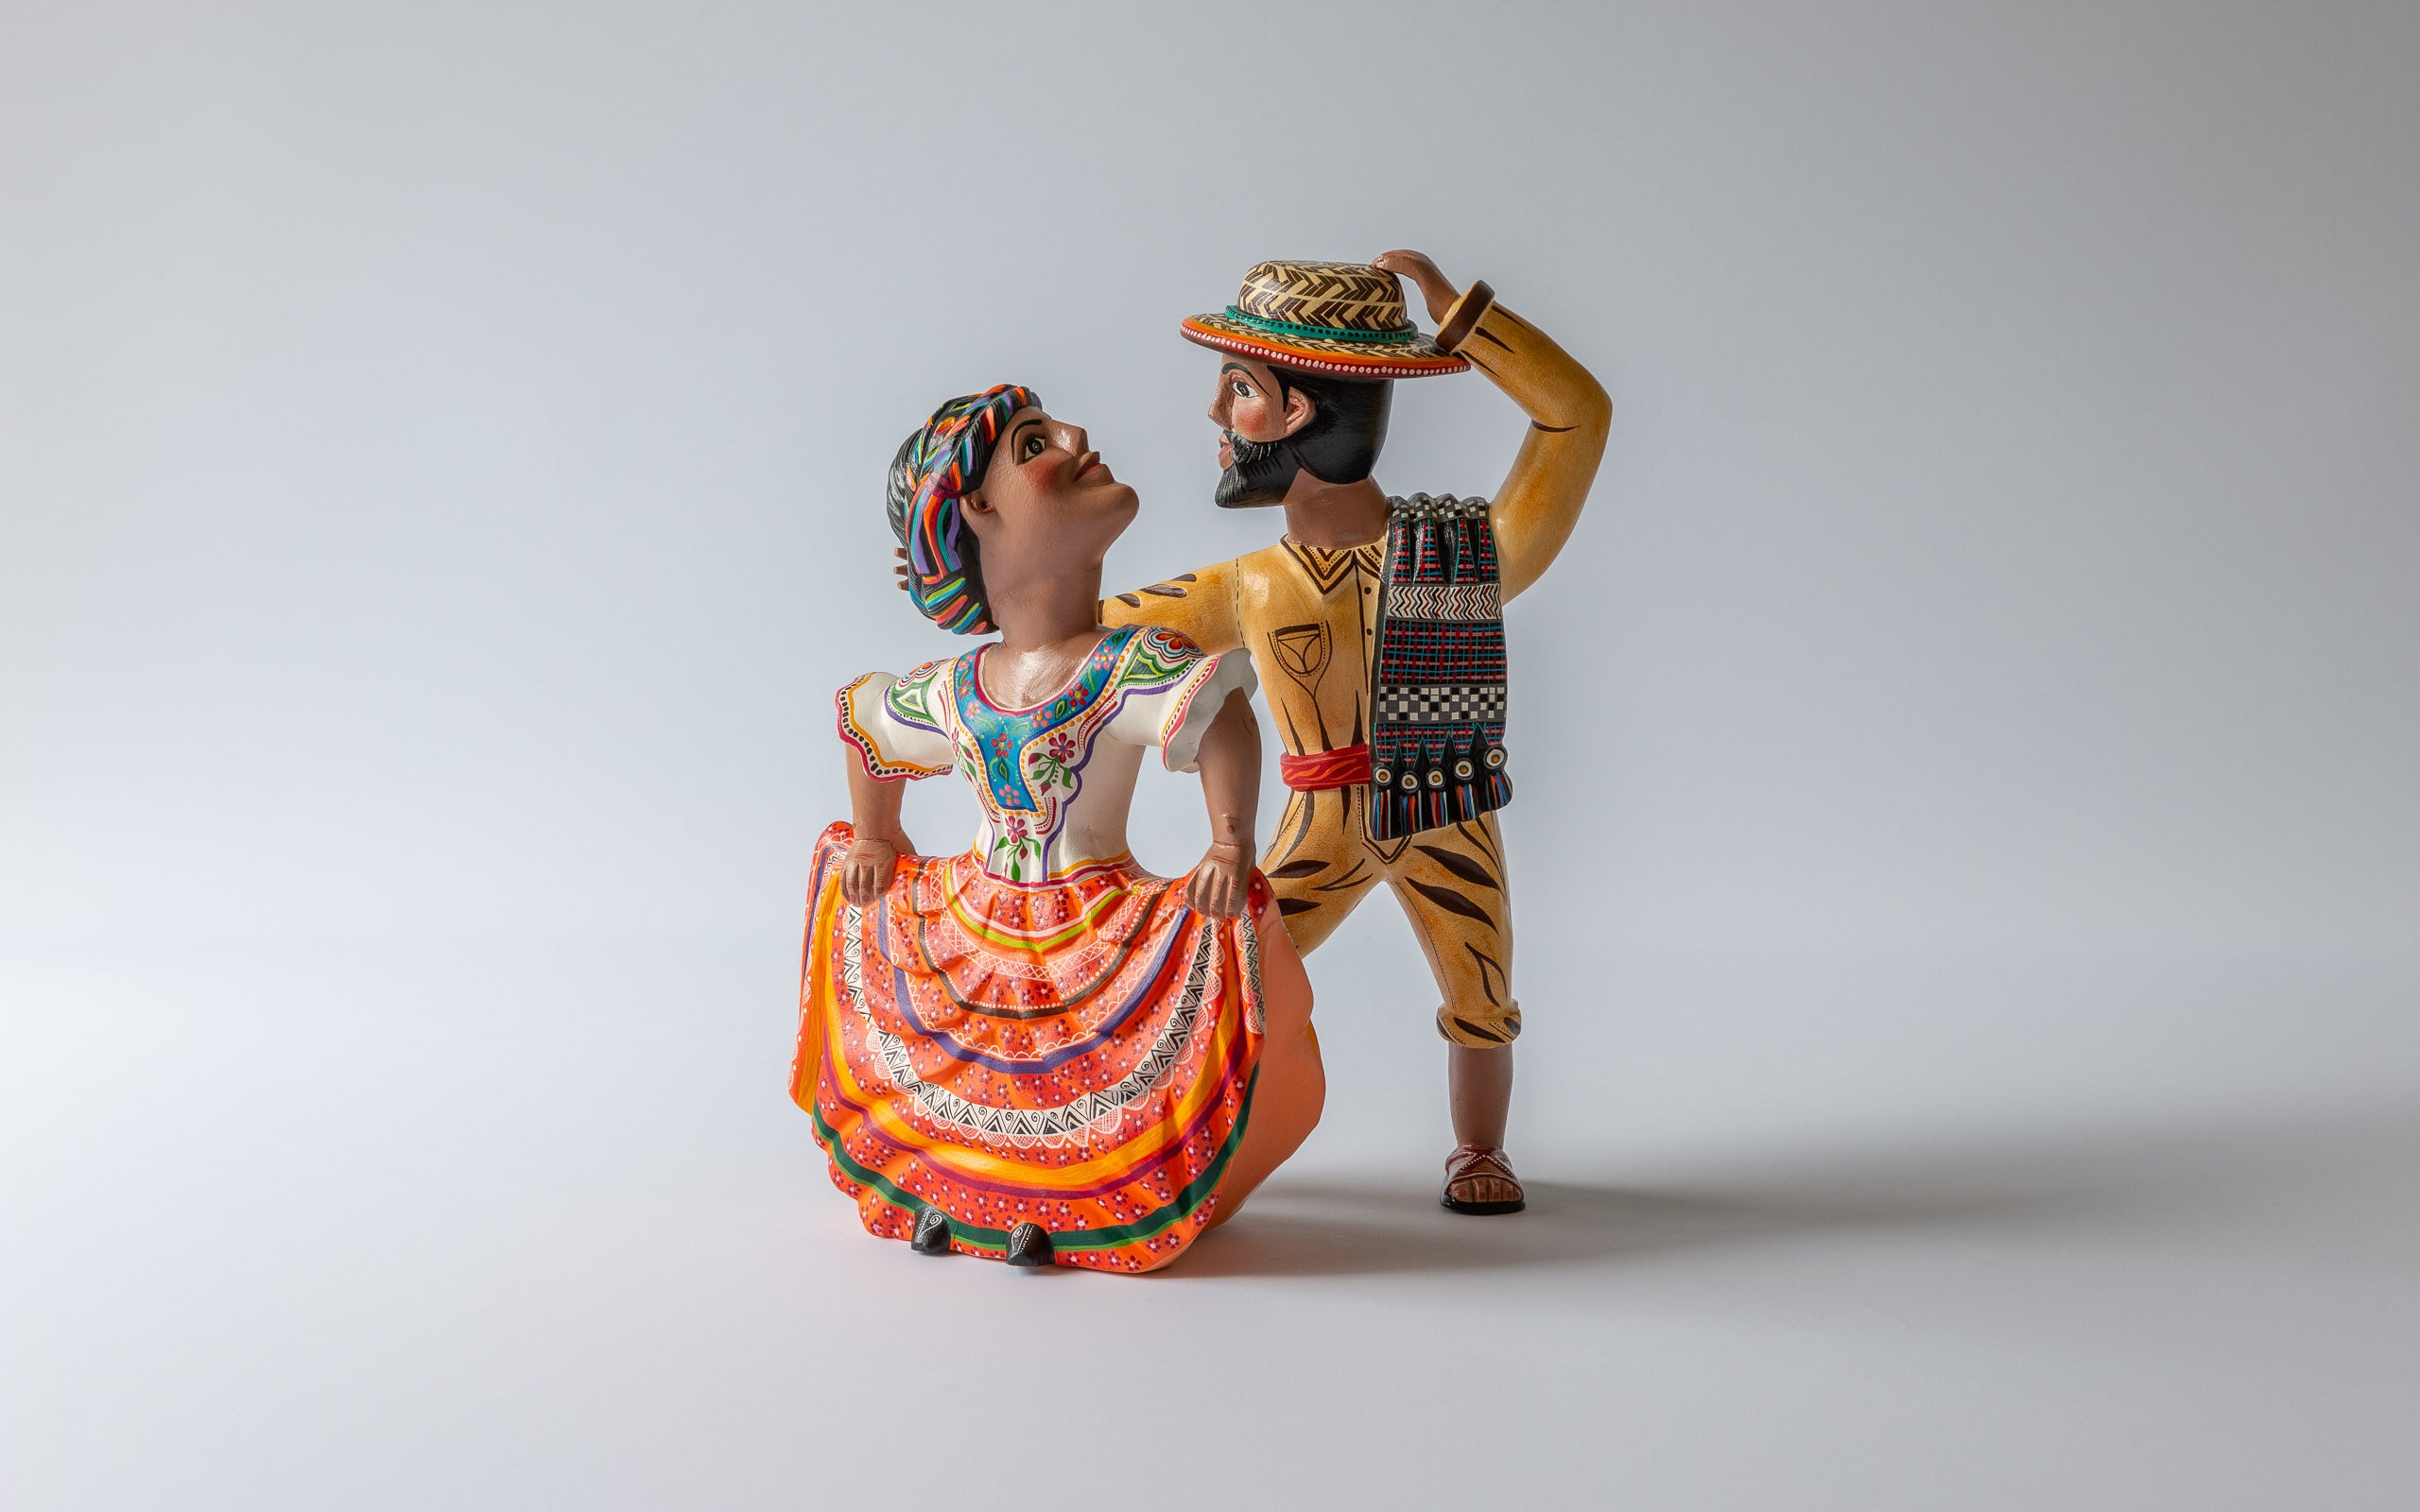 Traditionelle Tänzer: Das Paar dreht sich im Tanz, Kunsthandwerk aus Oaxaca